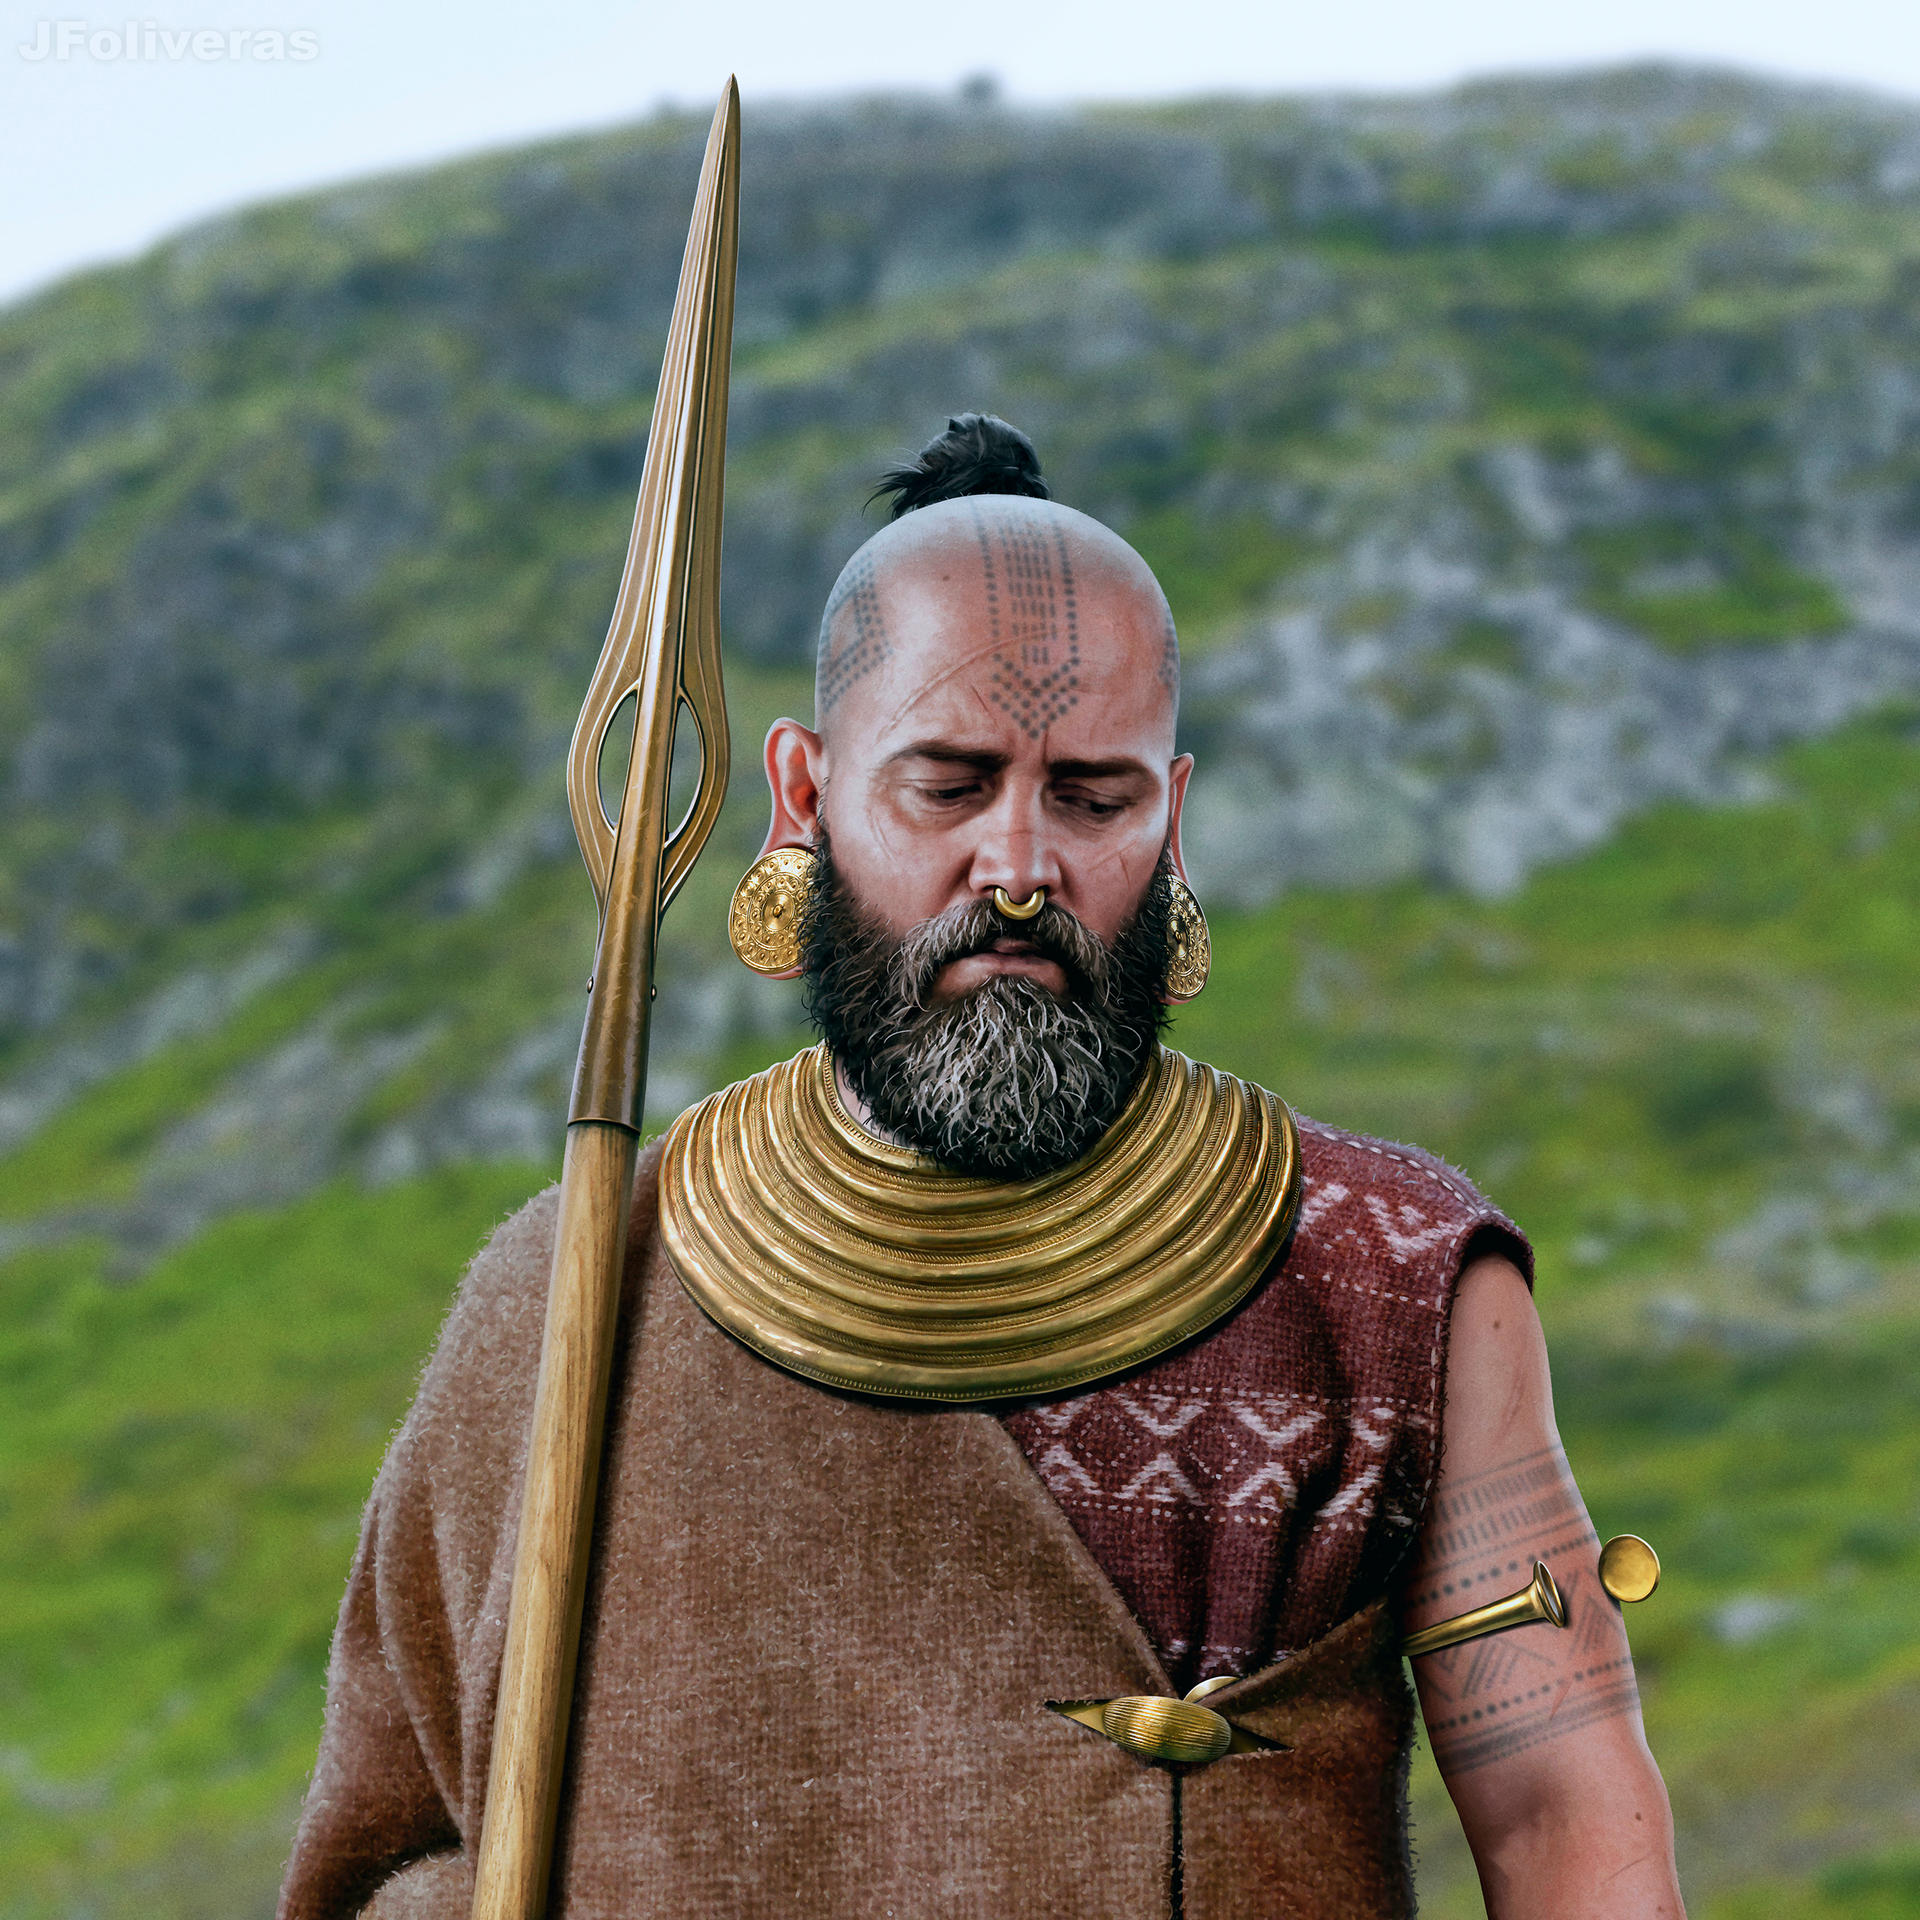 Irish Bronze Age chieftain by JFoliveras on DeviantArt